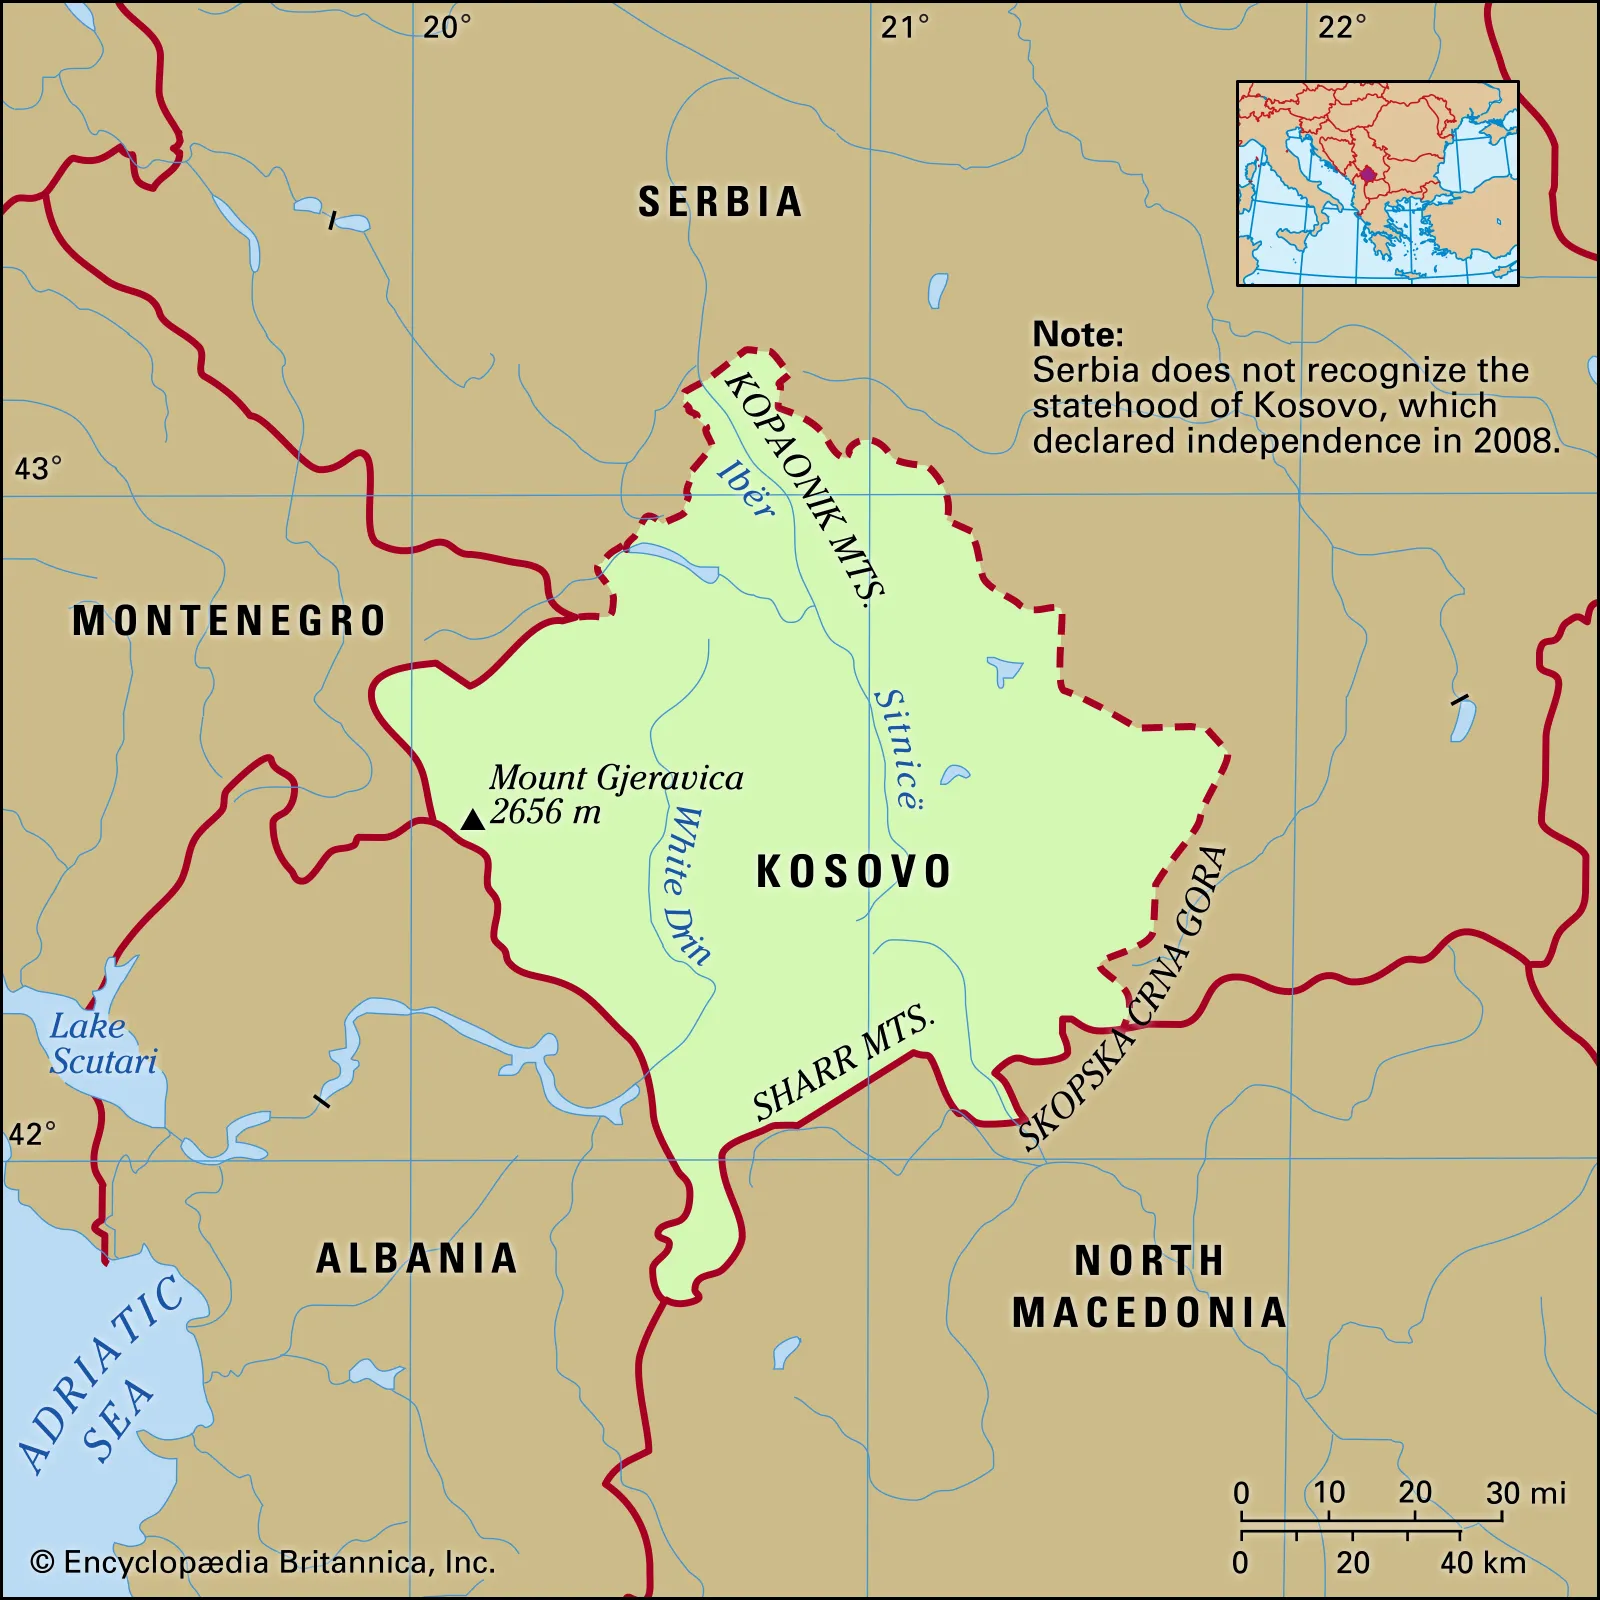 BBC: De ce apar probleme între sârbi și guvernul condus de albanezi din Kosovo